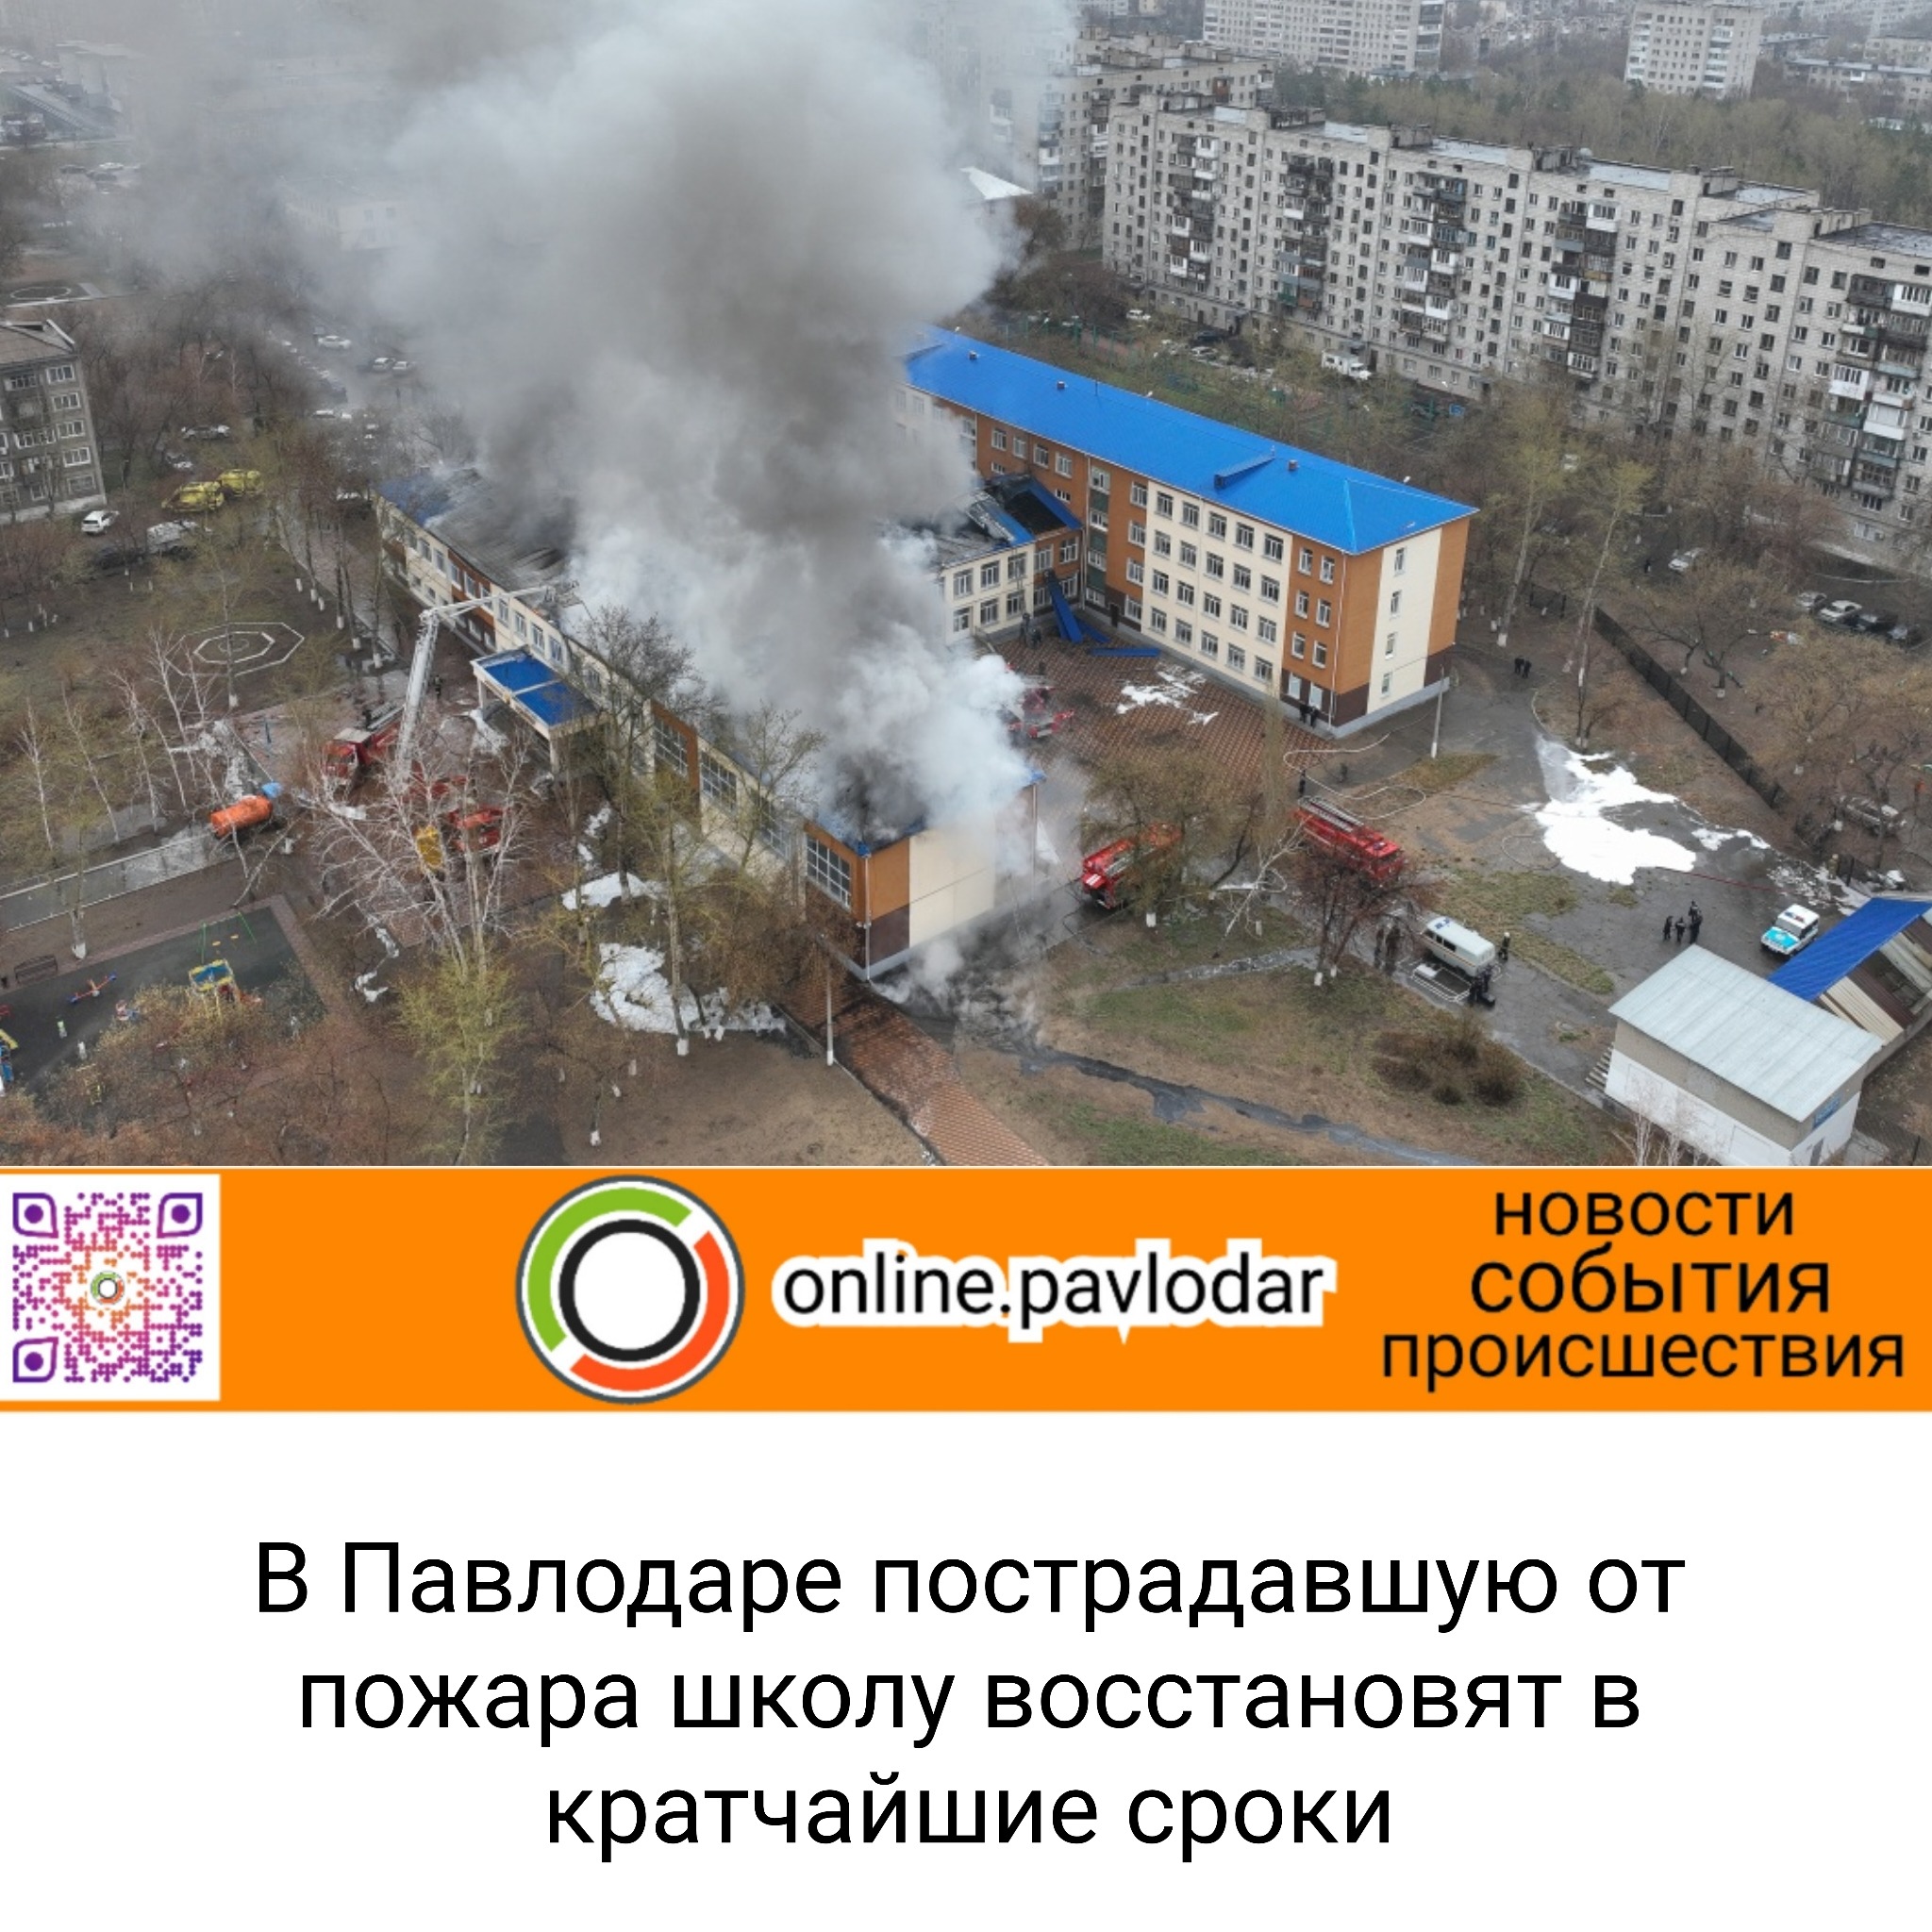 Что произошло со школами. Пожар в школе. Пожары в Павлодарской области. Пожар в школе фото. Восстановление после пожара.